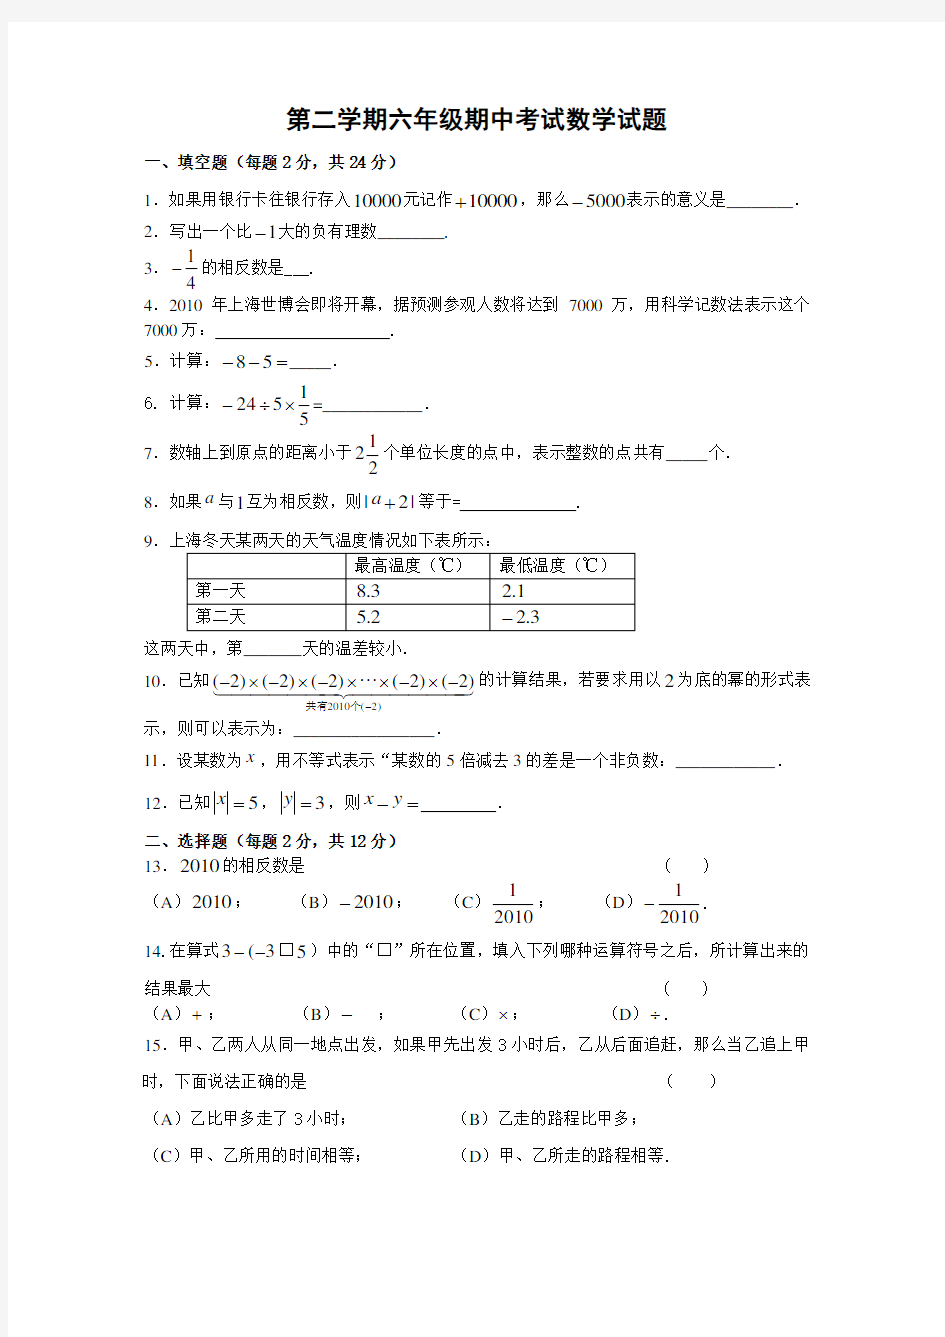 上海市六年级数学第二学期期中试卷及复习资料